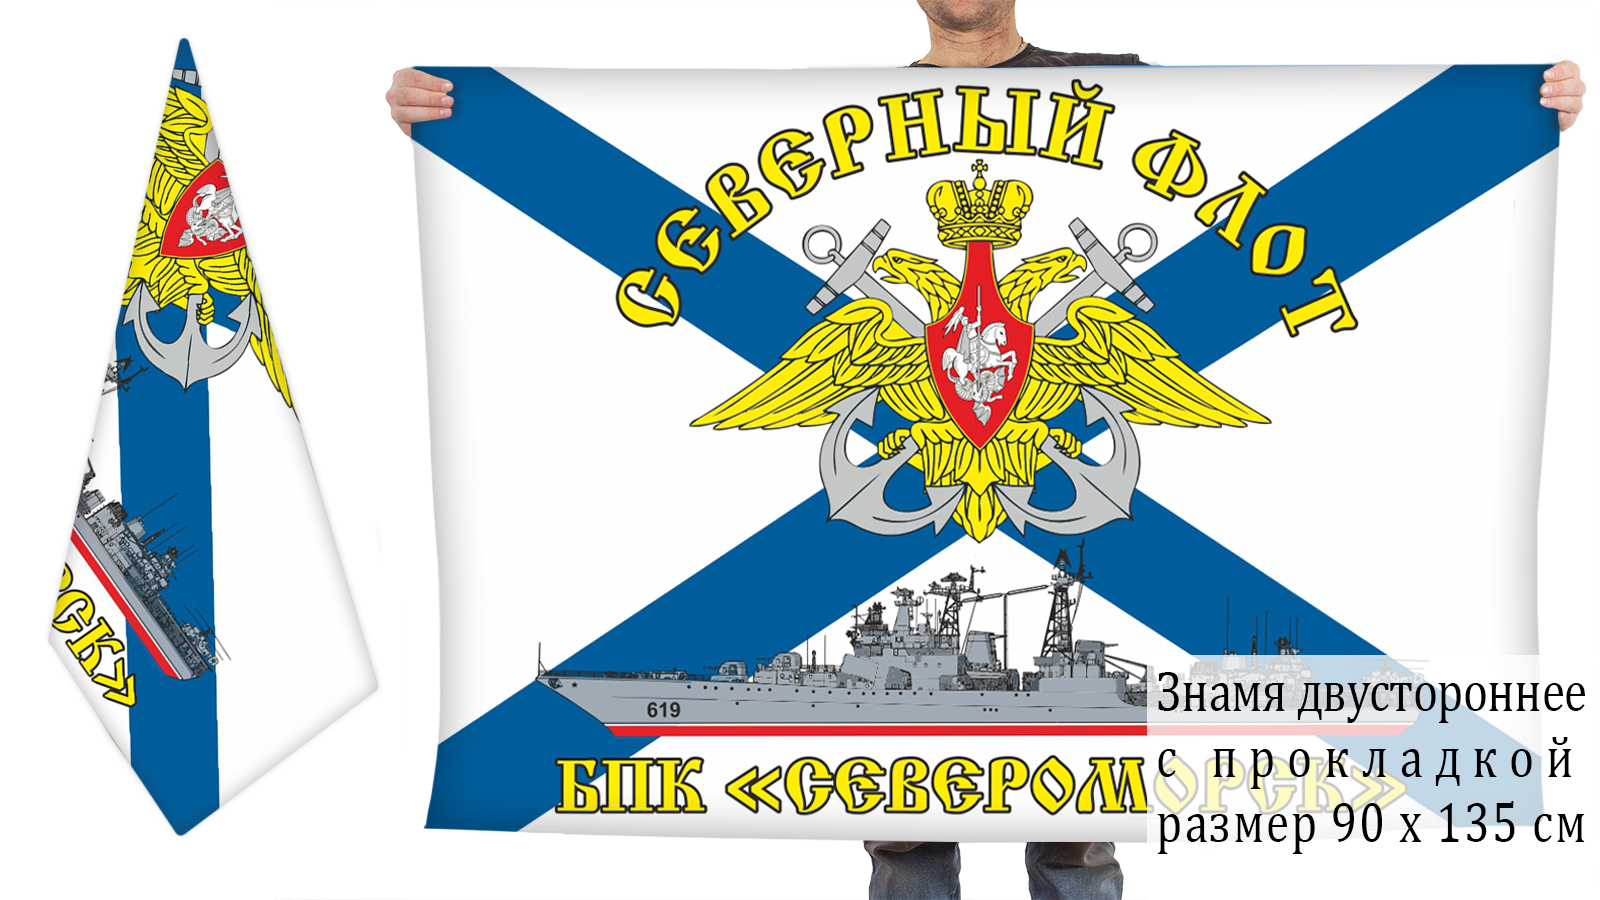 Двусторонний флаг БПК "Североморск" СФ